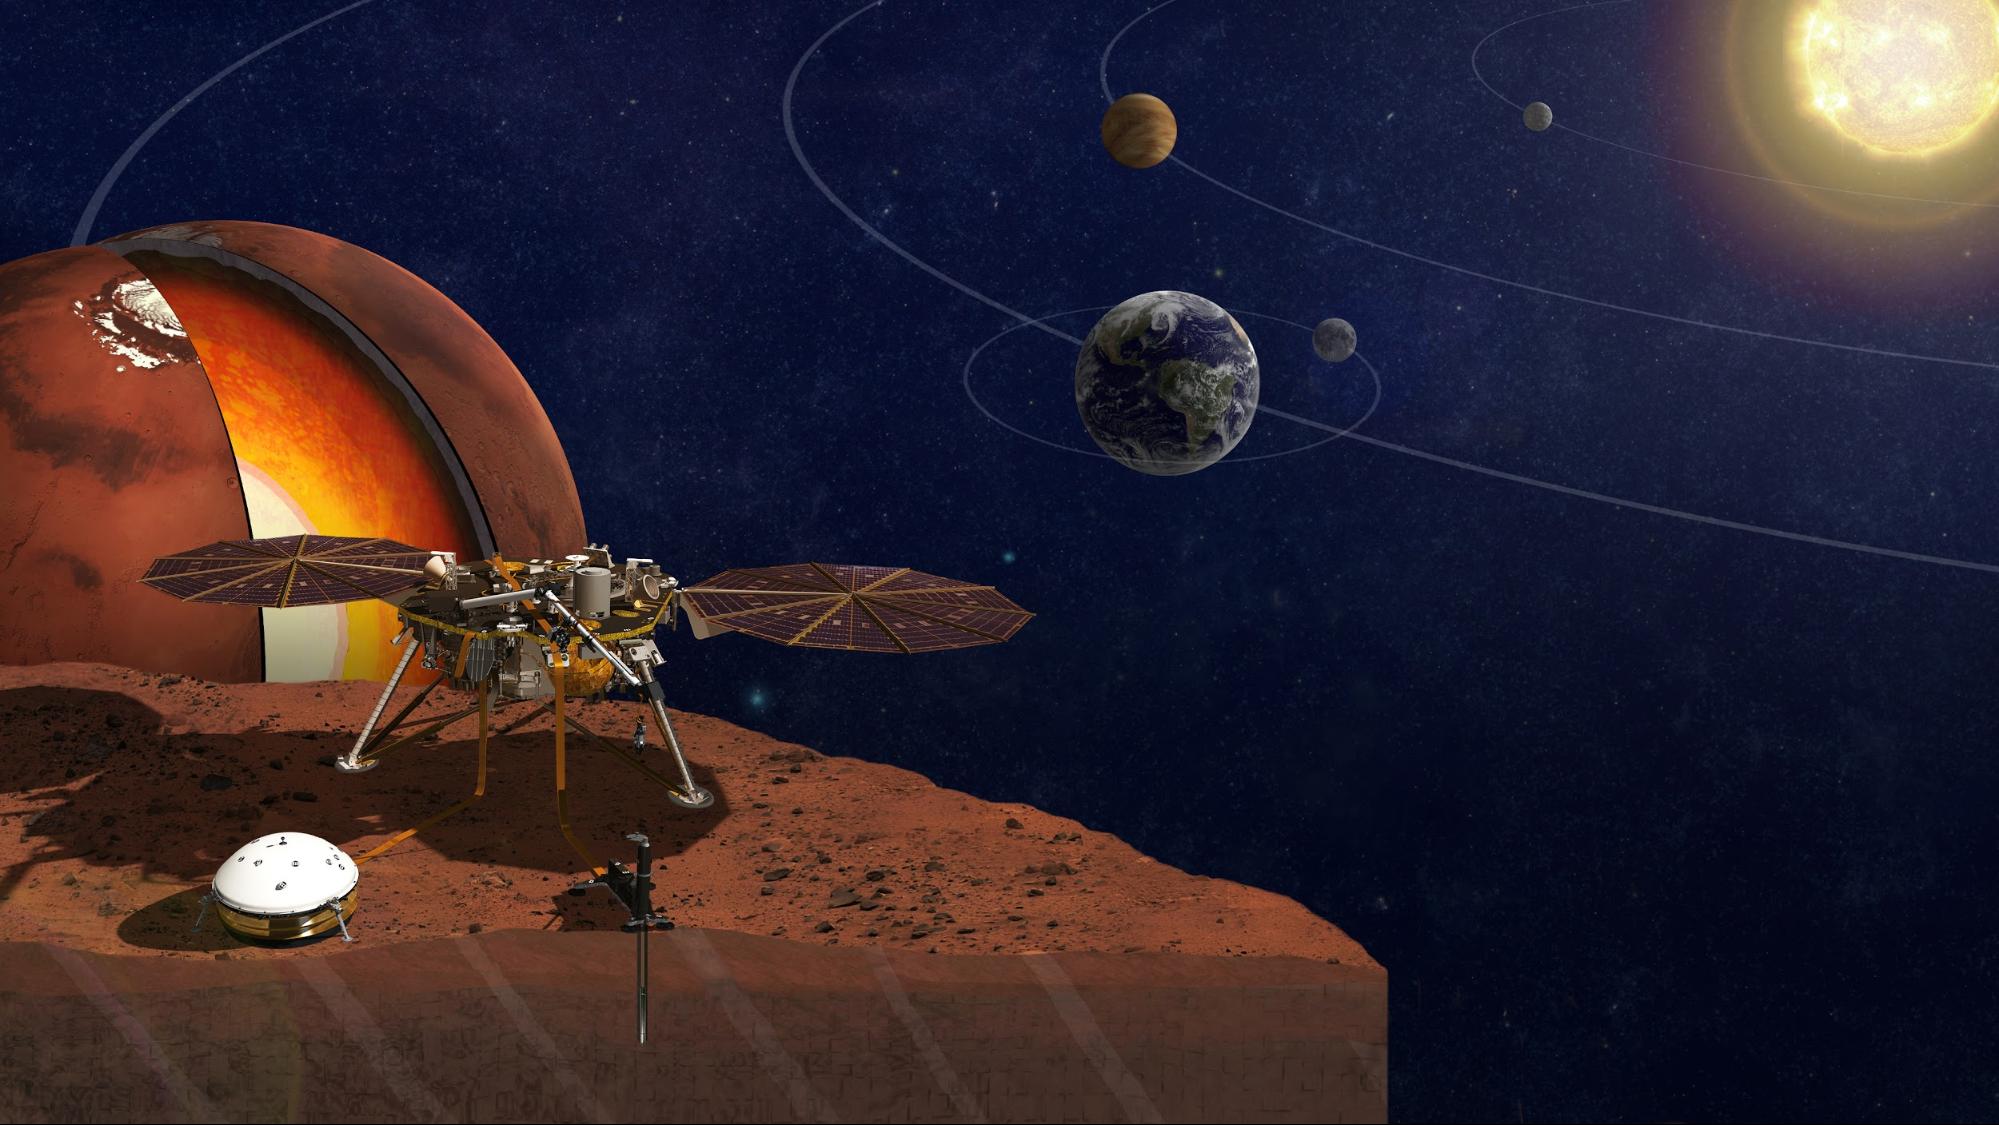 Artist concept of Insight Lander on Mars